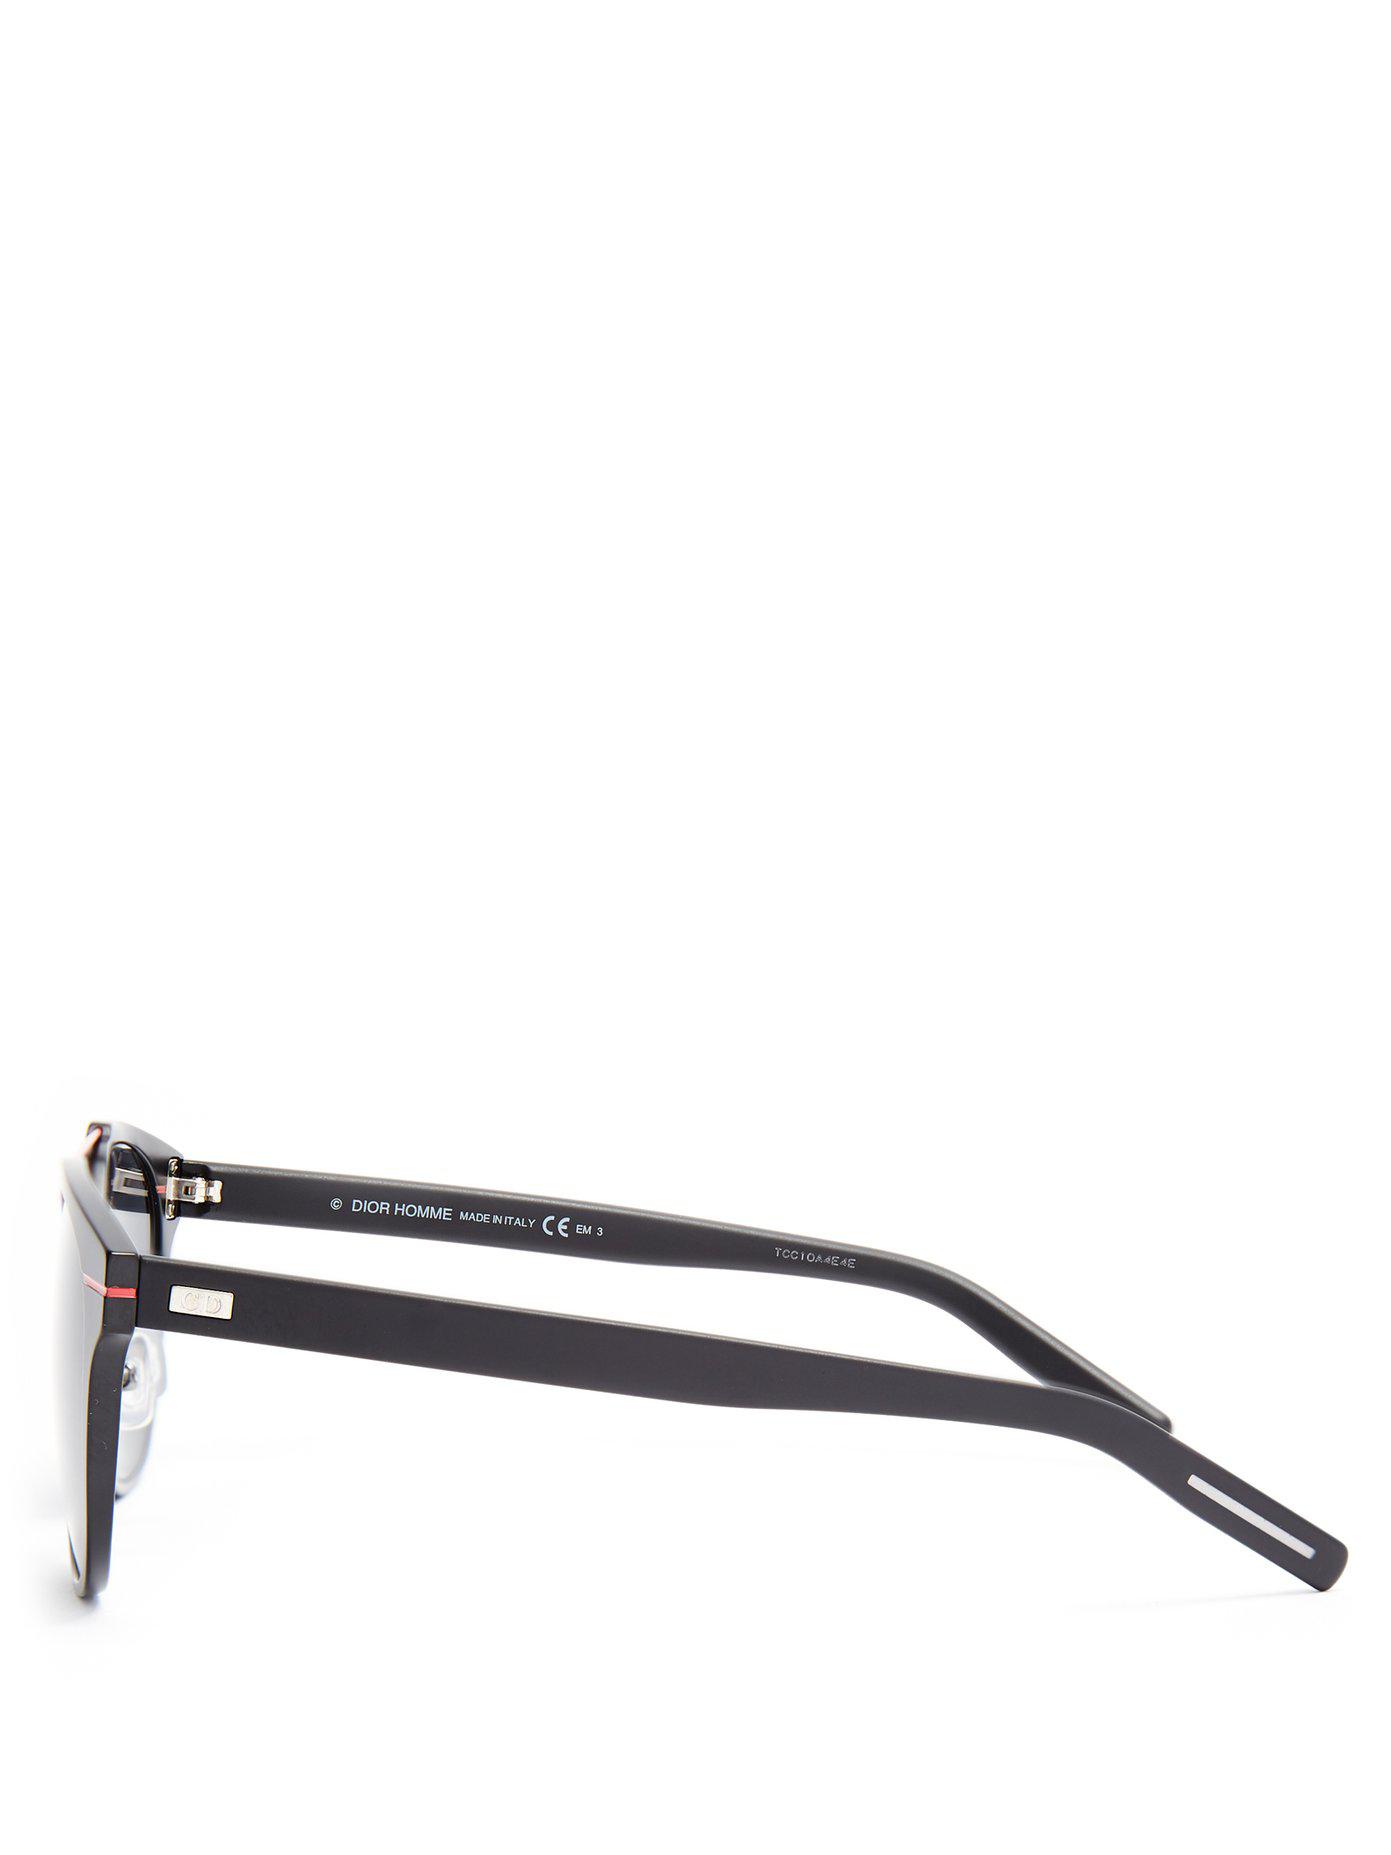 Dior Homme Al13.5 Aluminium Sunglasses in Black for Men - Lyst